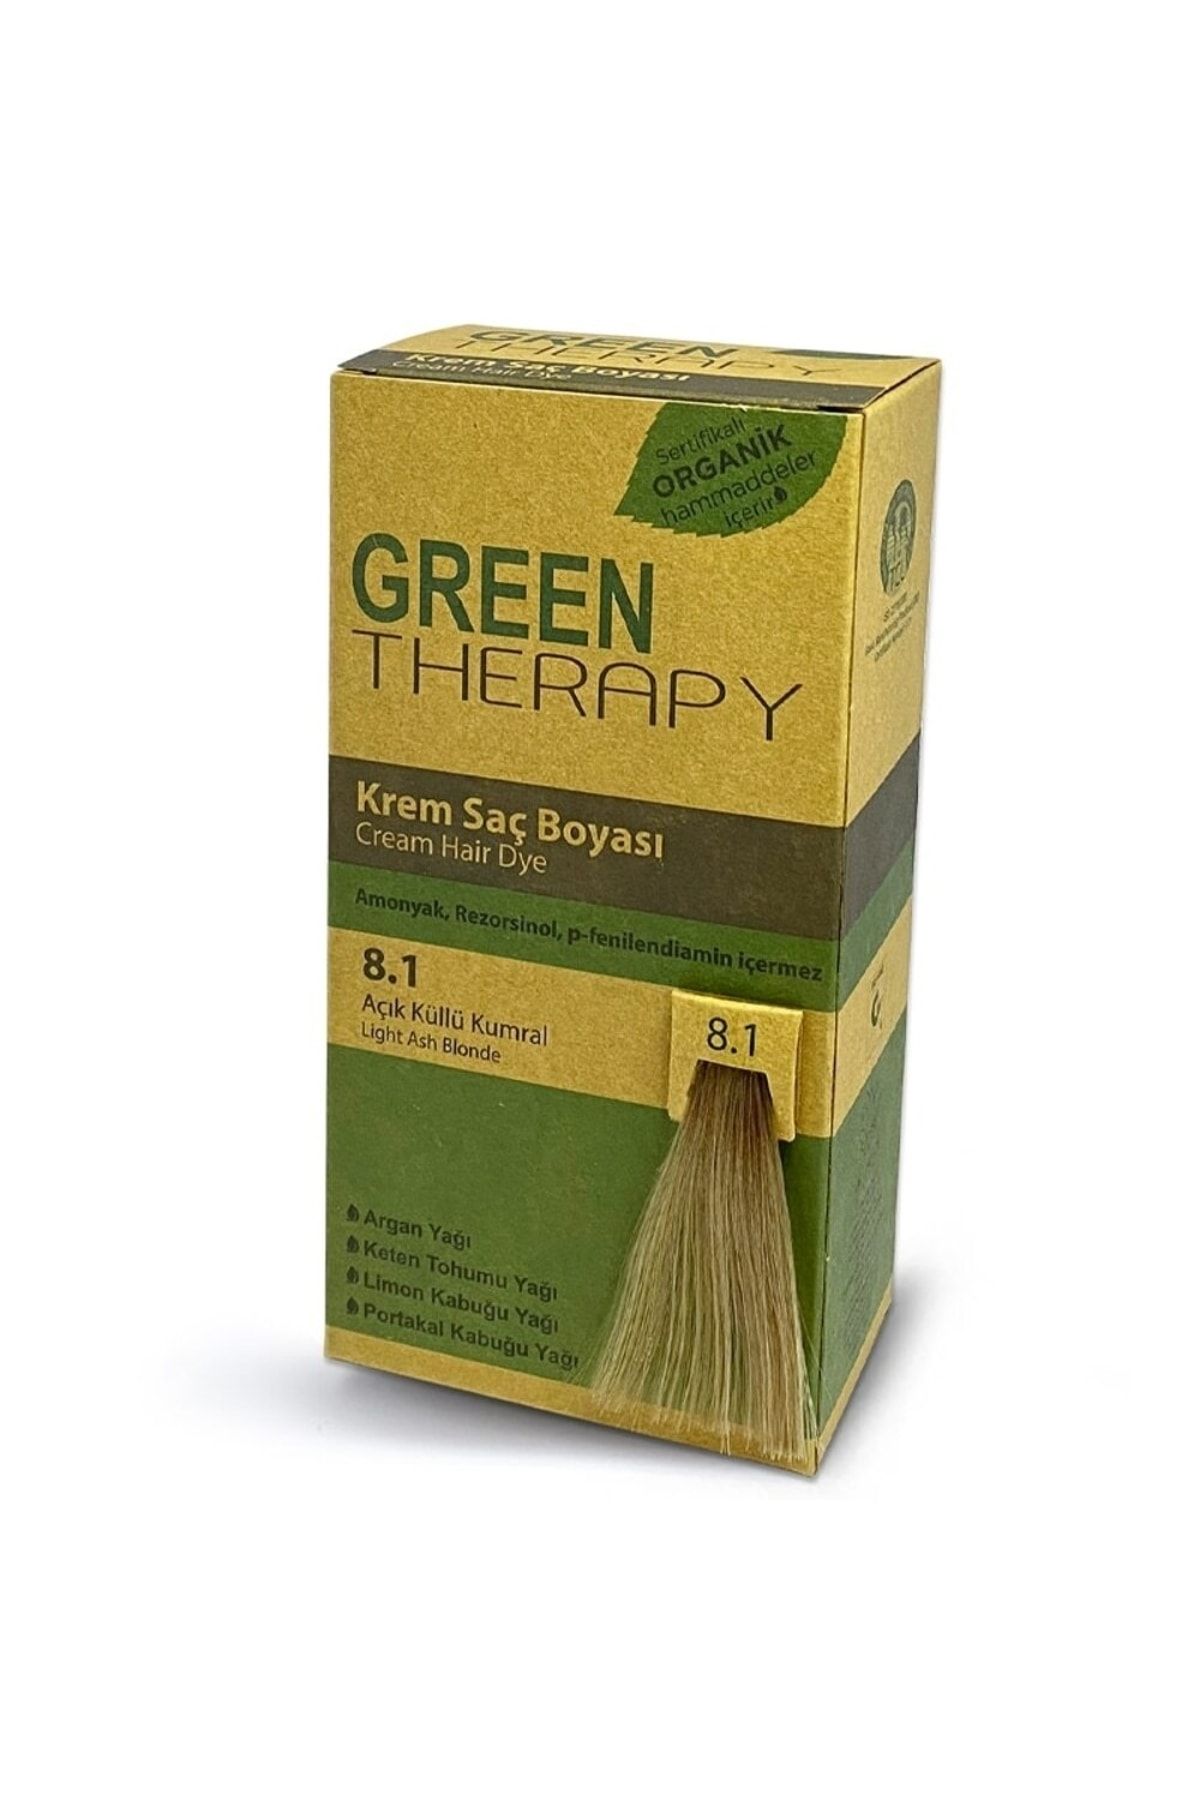 Green Therapy Krem Saç Boyası 5,7 Türk Kahvesi